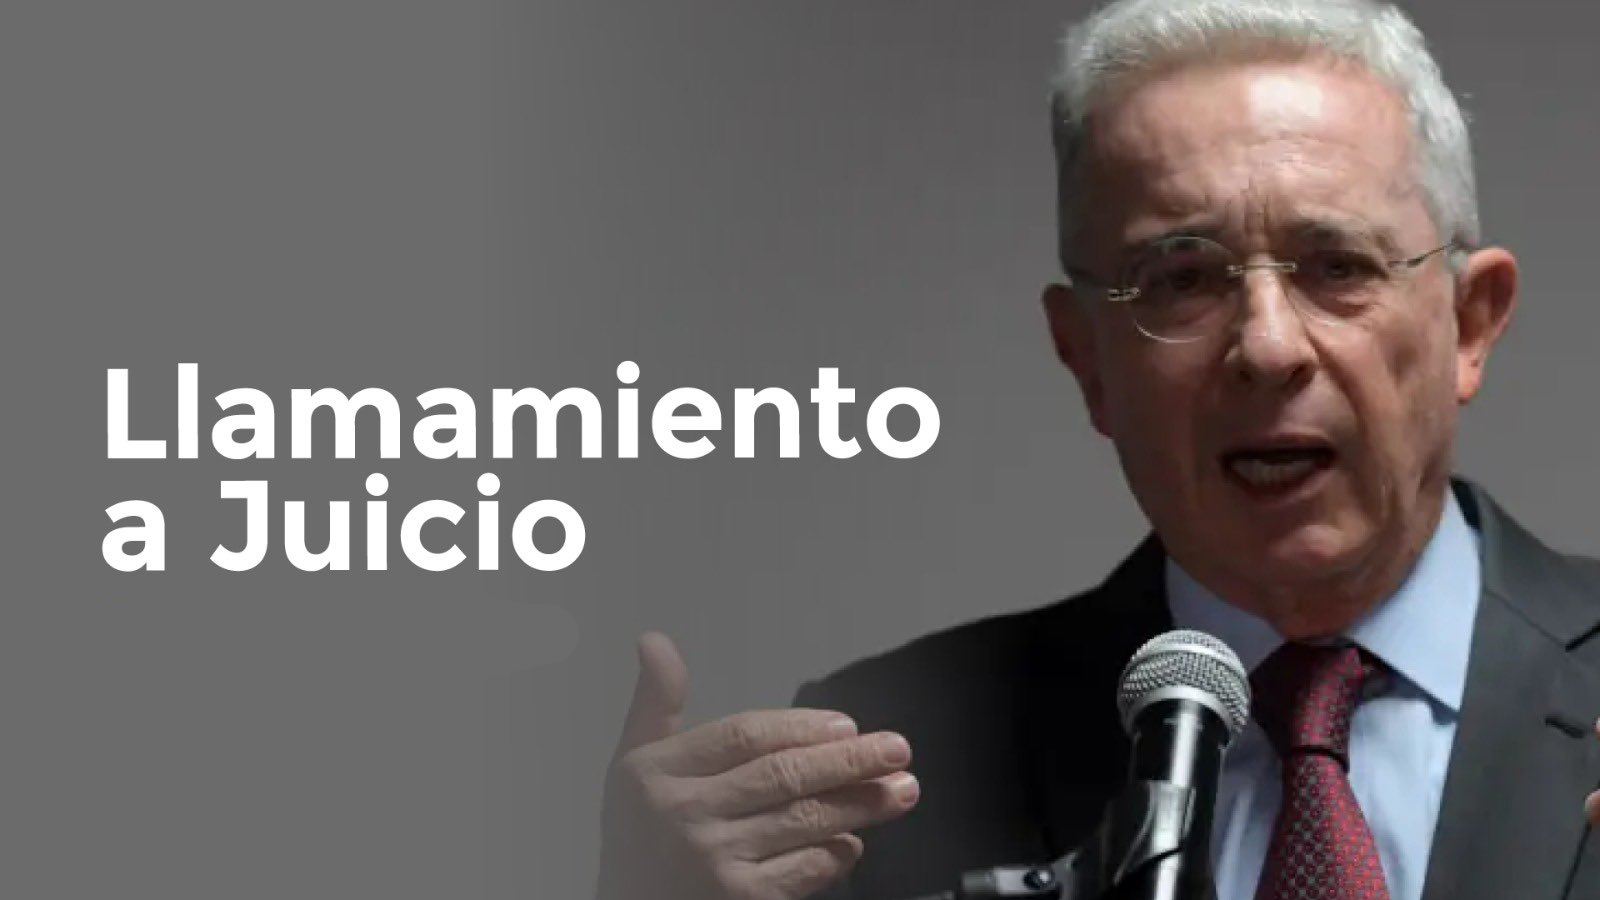 Composición del político Álvaro Uribe con las palabras llamamiento a juicio.